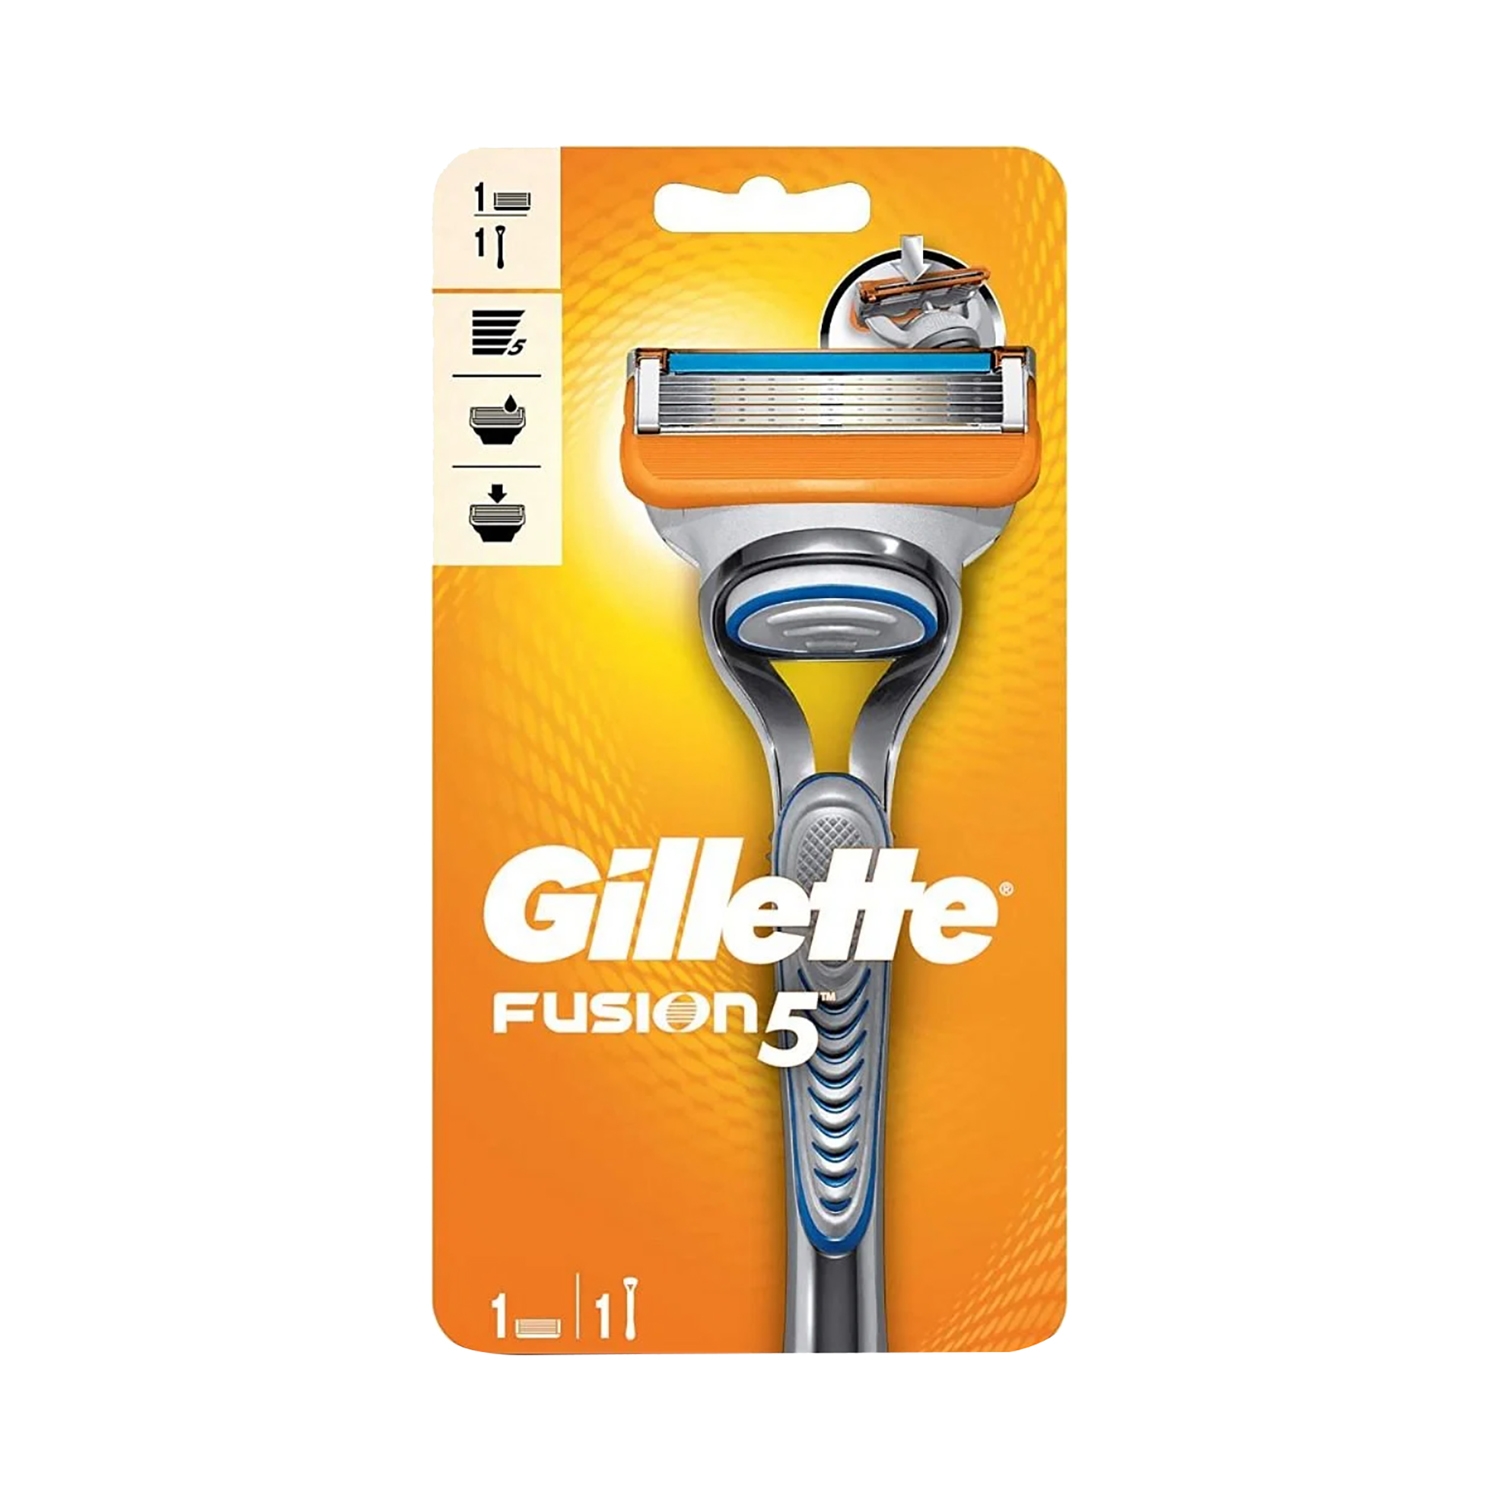 Gillette | Gillette Fusion 5 Razor + 1 Cartridge